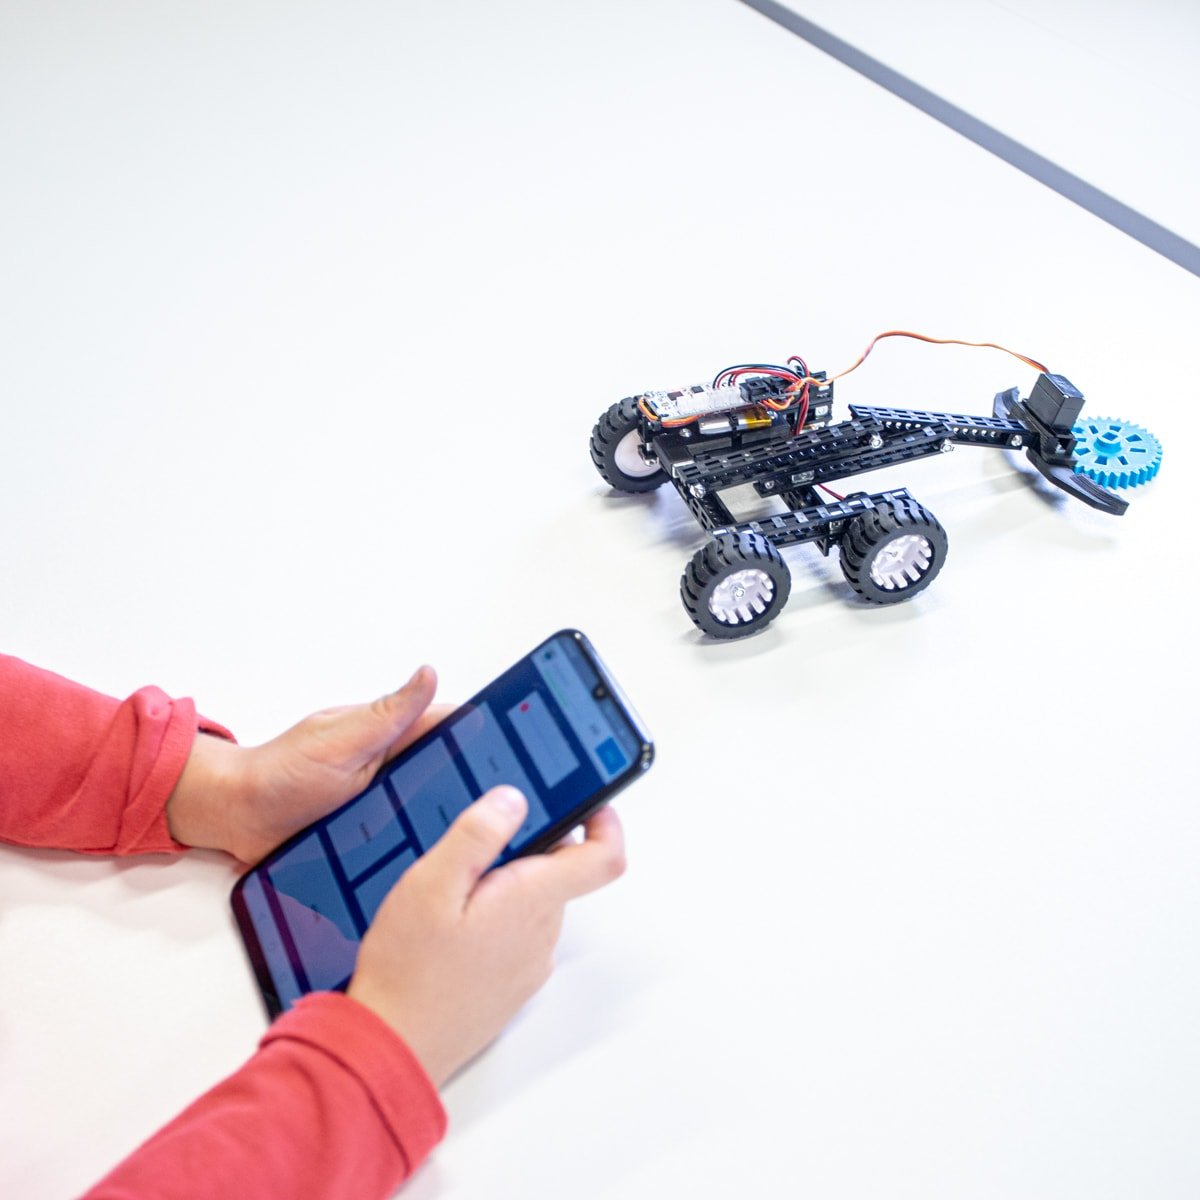 Robot ovládaný mobilní aplikací